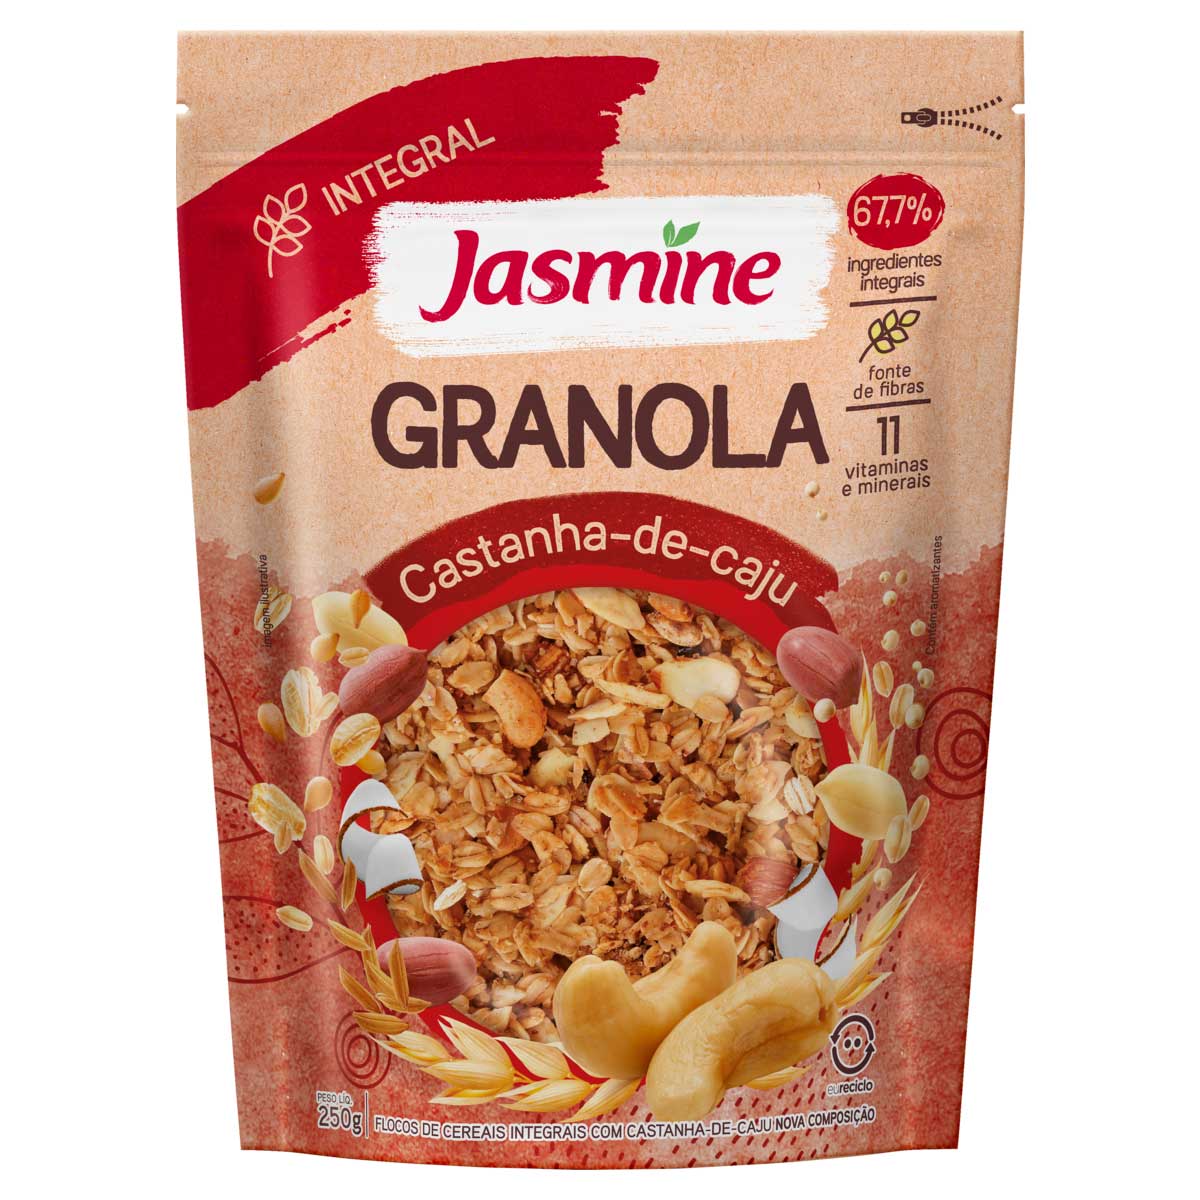 granola-castanha-de-caju-jasmine-pouch-250-g-1.jpg